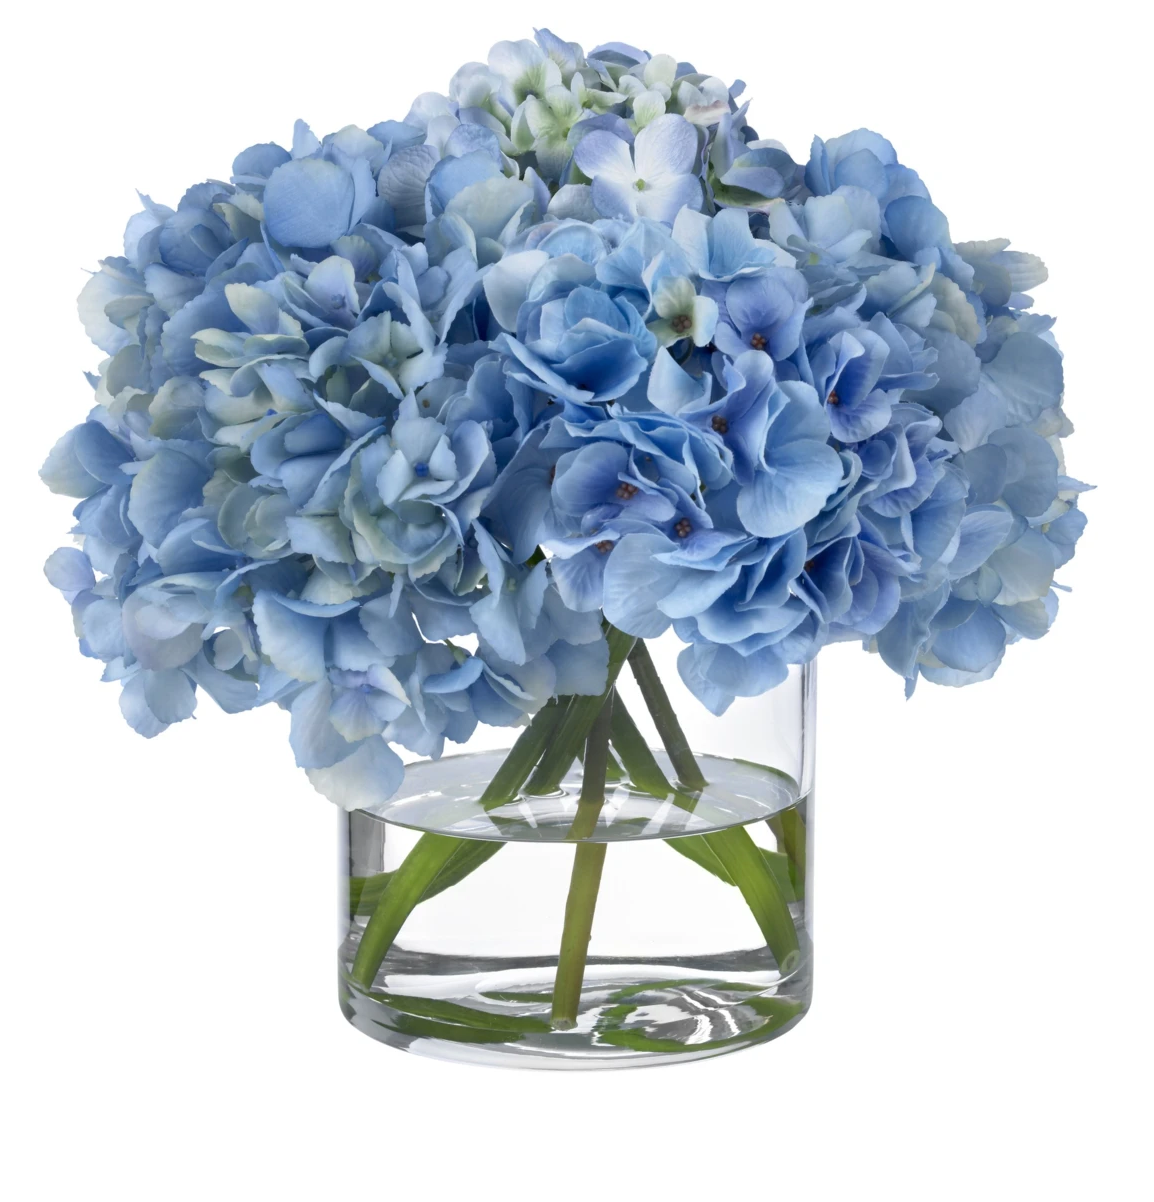 Diane James Home Blue Hydrangea Faux Floral Arrangement - Chanel Home